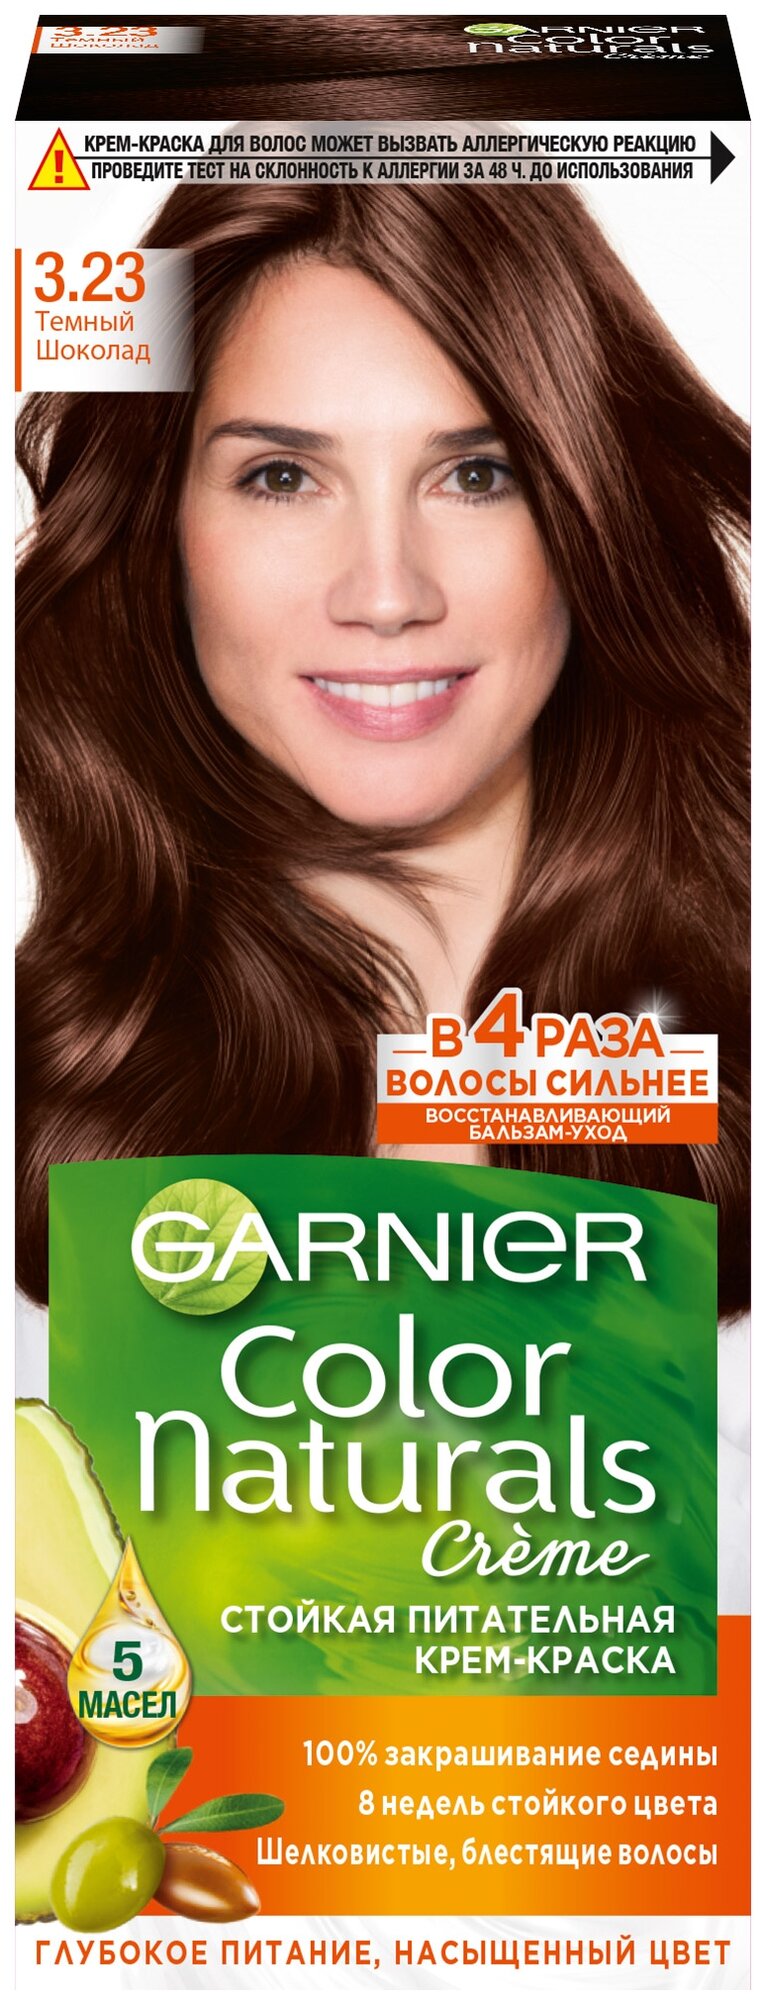 Garnier Краска для волос Color Naturals 3.23 Темный шоколад, 112 мл